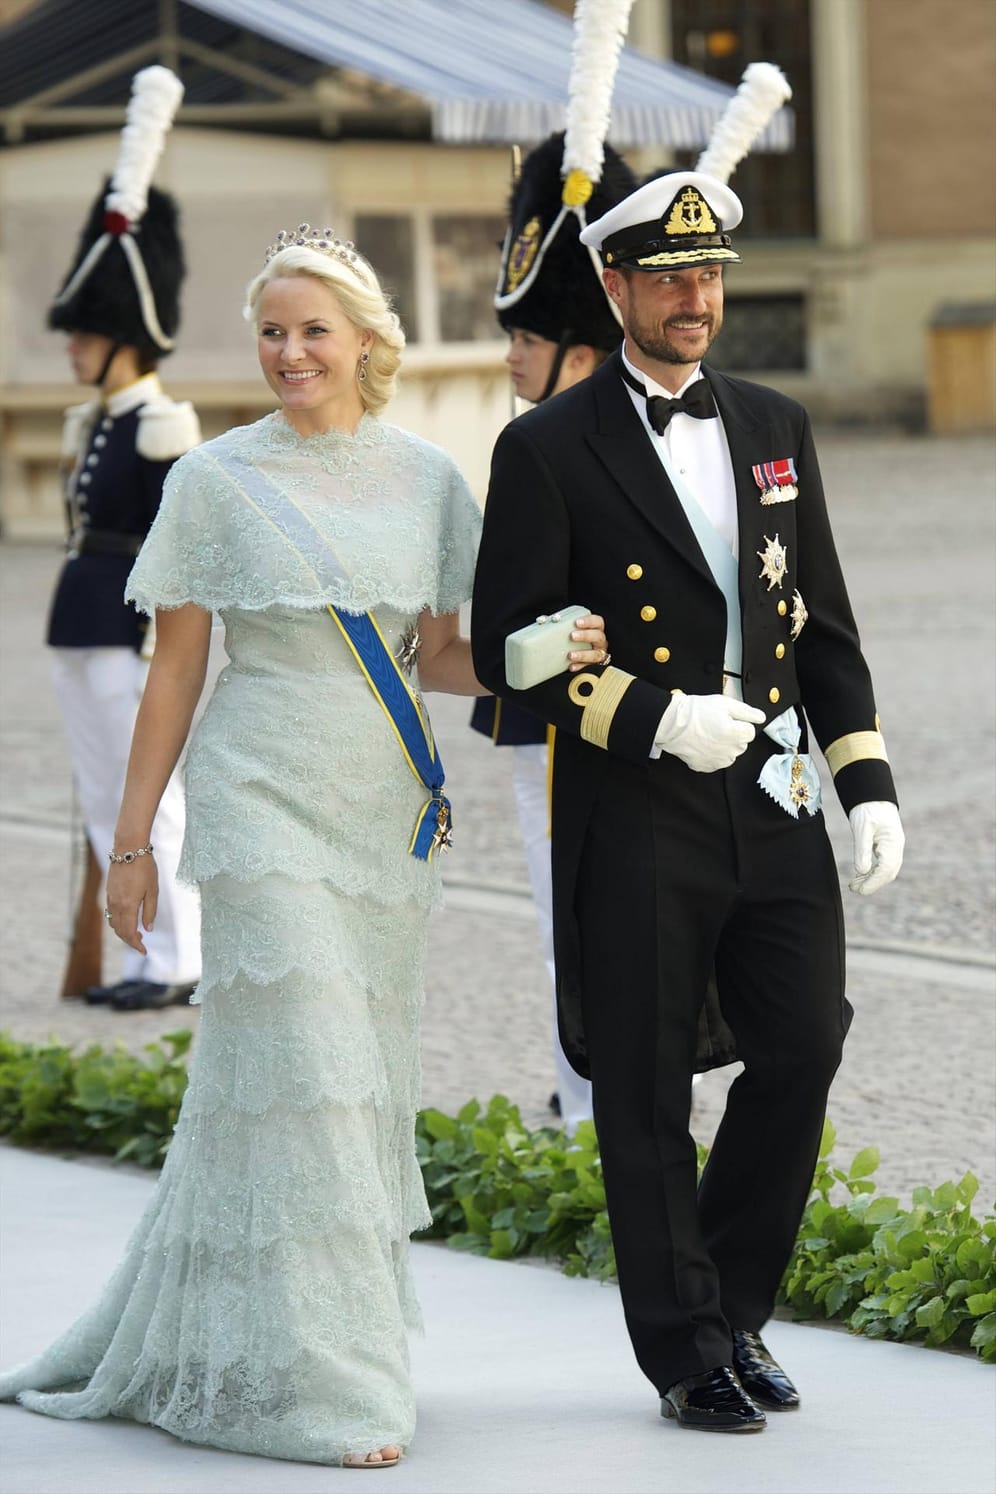 Hochzeit in Schweden: Als Prinzessin Madeleine ihren Chris O'Neill geheiratet hat, waren Mette-Marit und Haakon ebenfalls als Gäste geladen.